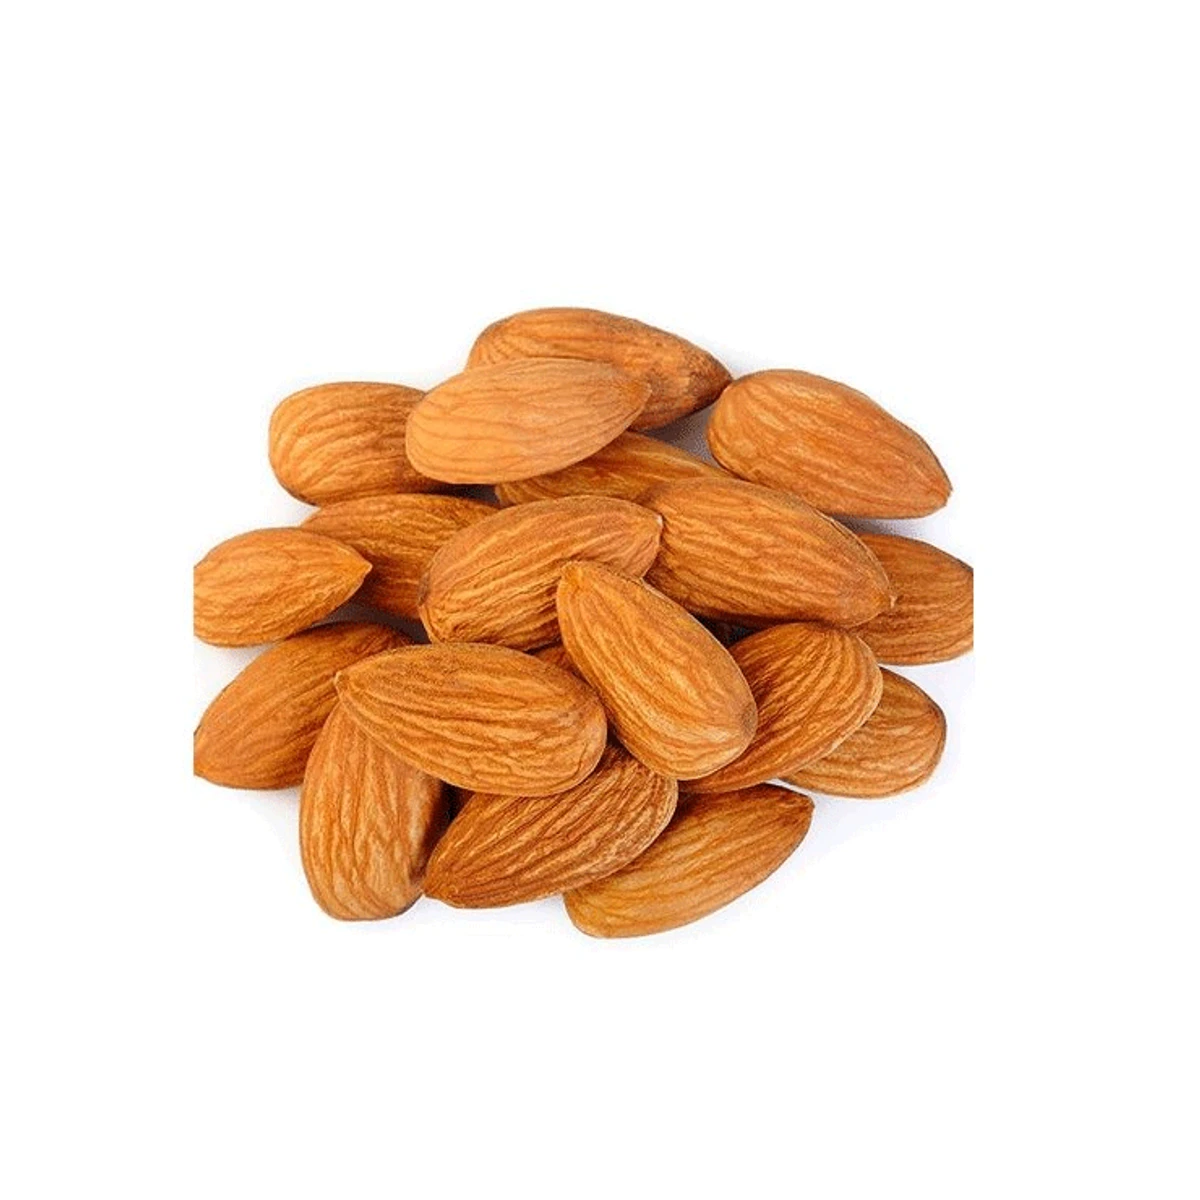 Almond (৫০০ গ্রাম কাঠ বাদাম)